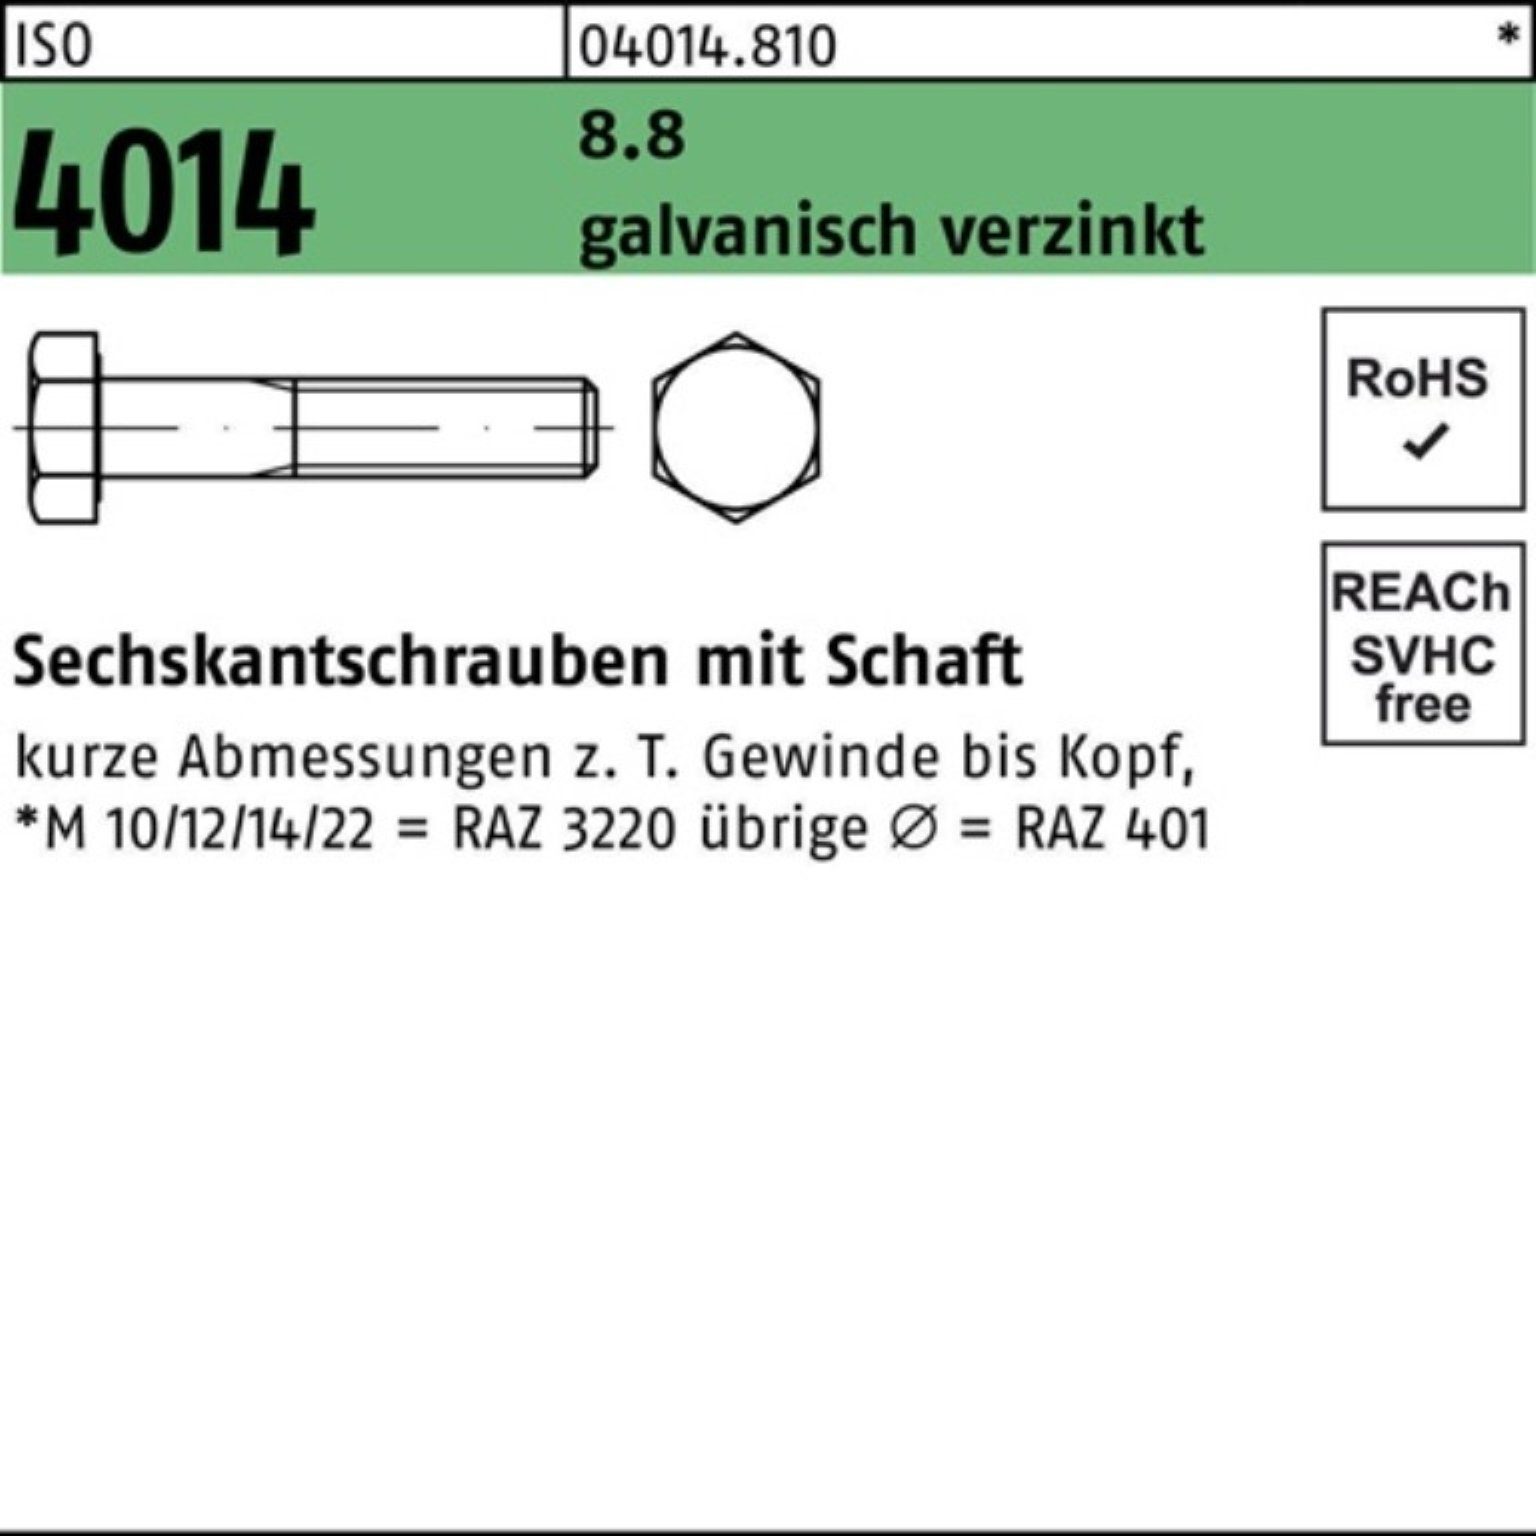 Bufab Sechskantschraube 1 4014 8.8 M24x 100er Schaft Sechskantschraube galv.verz. Pack ISO 440